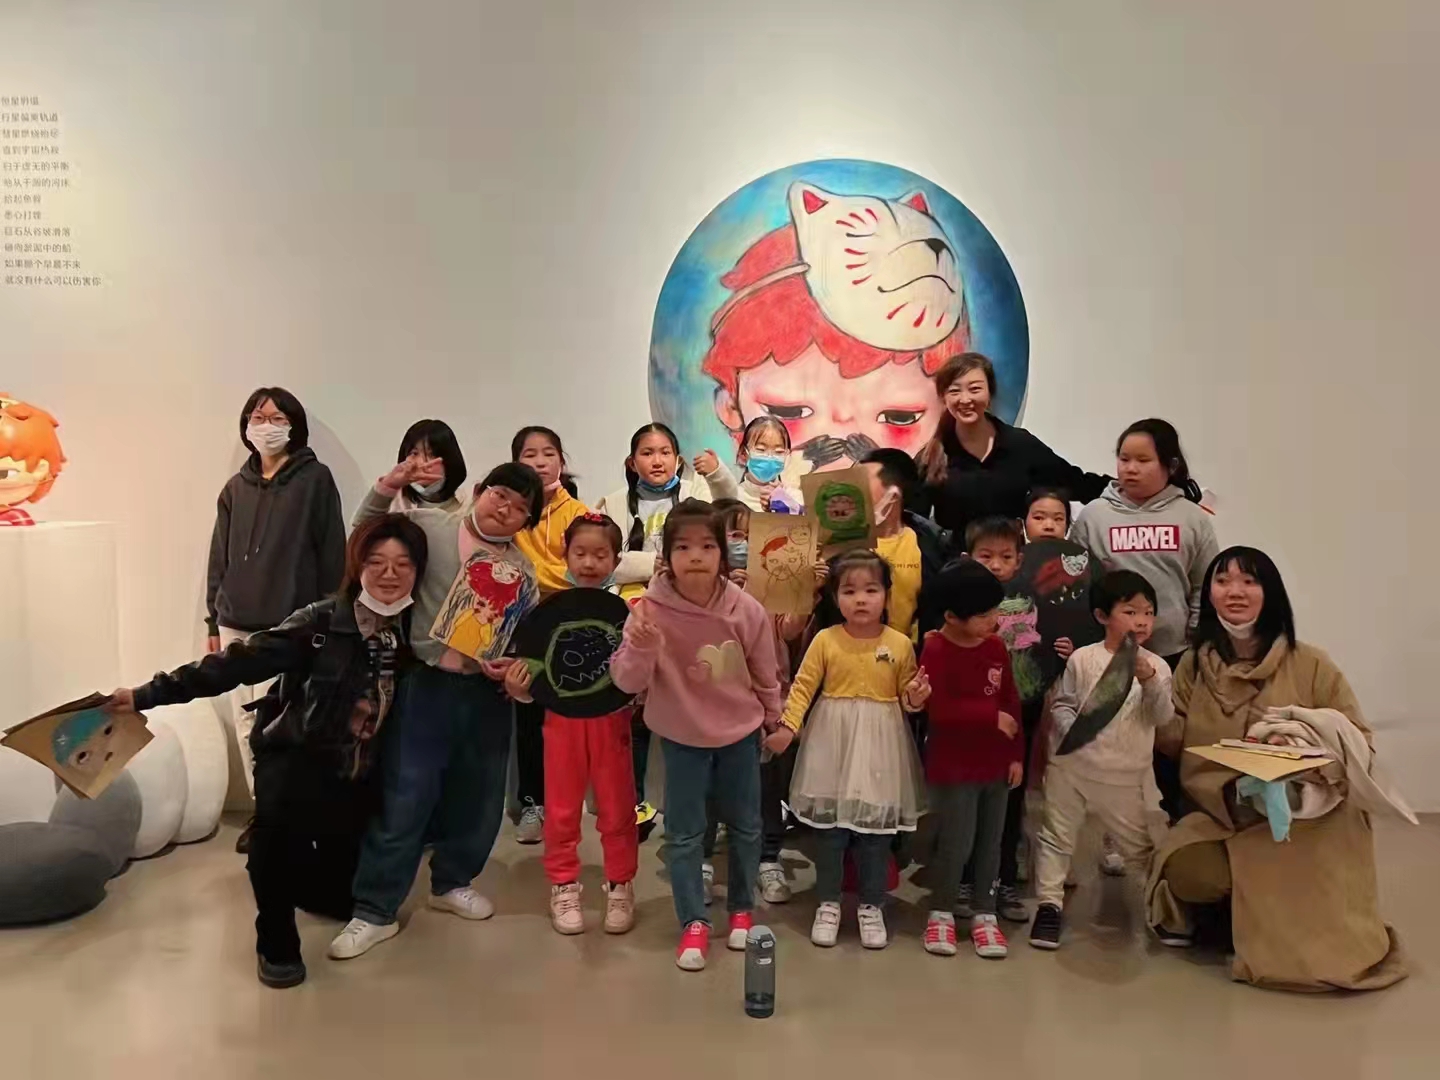 【2021年10月】墨境轩组织学生走进“松美术馆，泡泡玛特的Hirono（小野）线下艺术展览” 活动 第1张